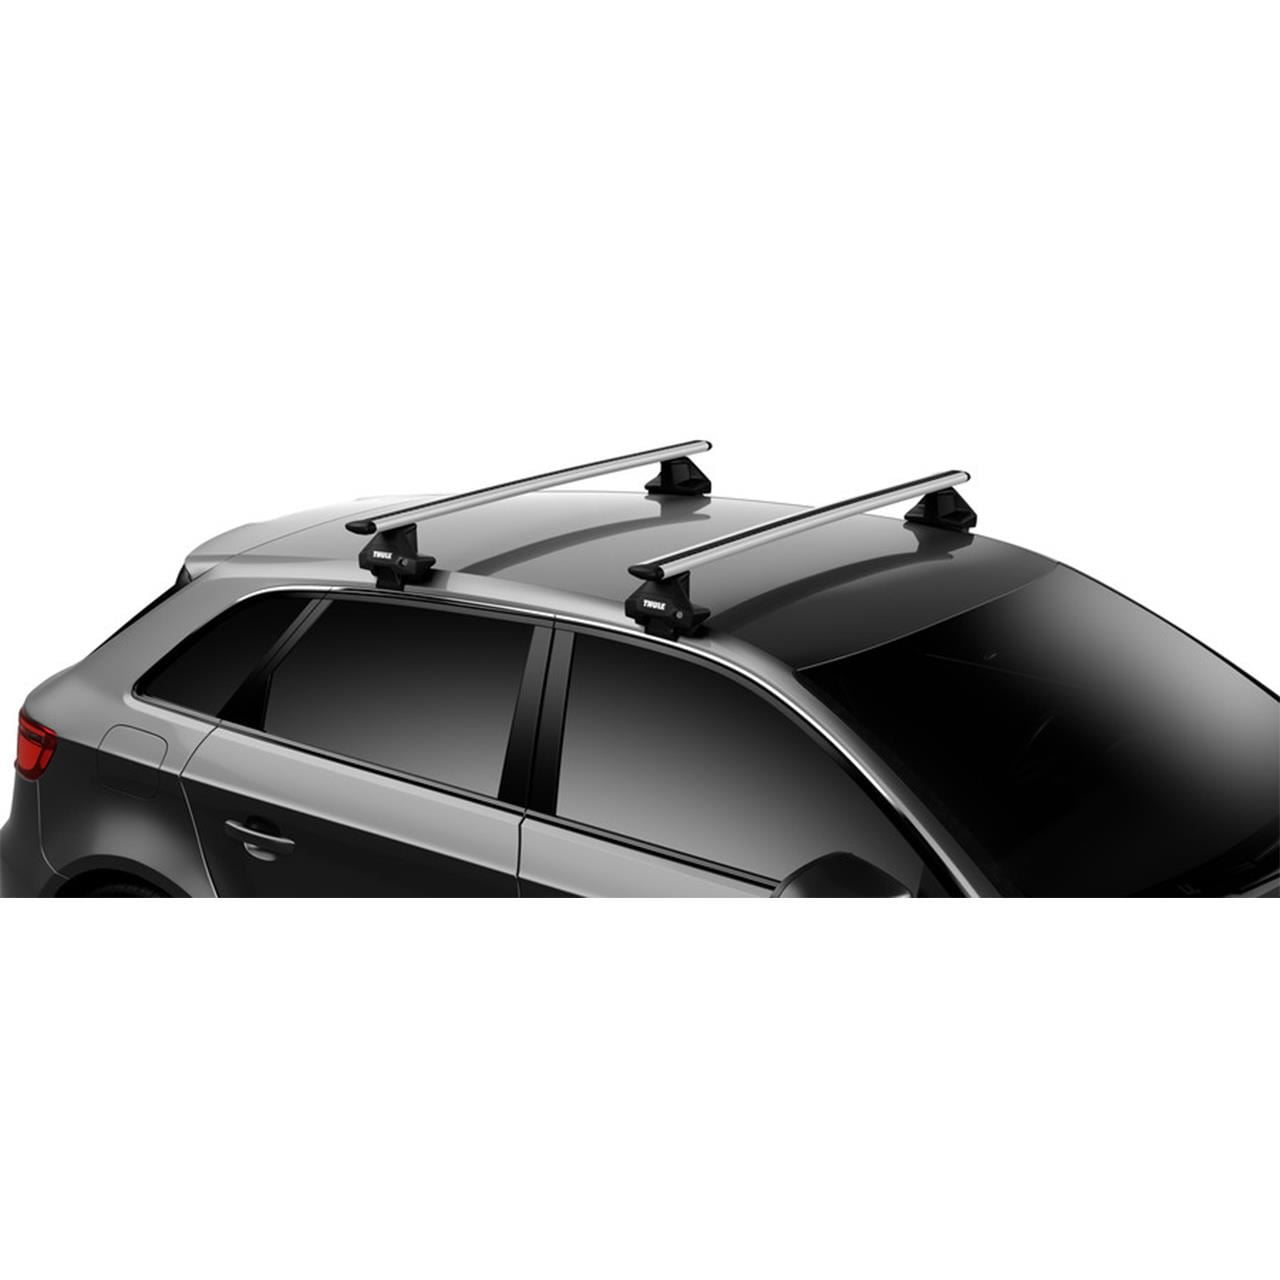 Bare transversale Thule Evo Clamp Wingbar Evo pentru SKODA Octavia III 5 usi Hatchback model 2013 Sistem cu prindere pe plafon normal 9